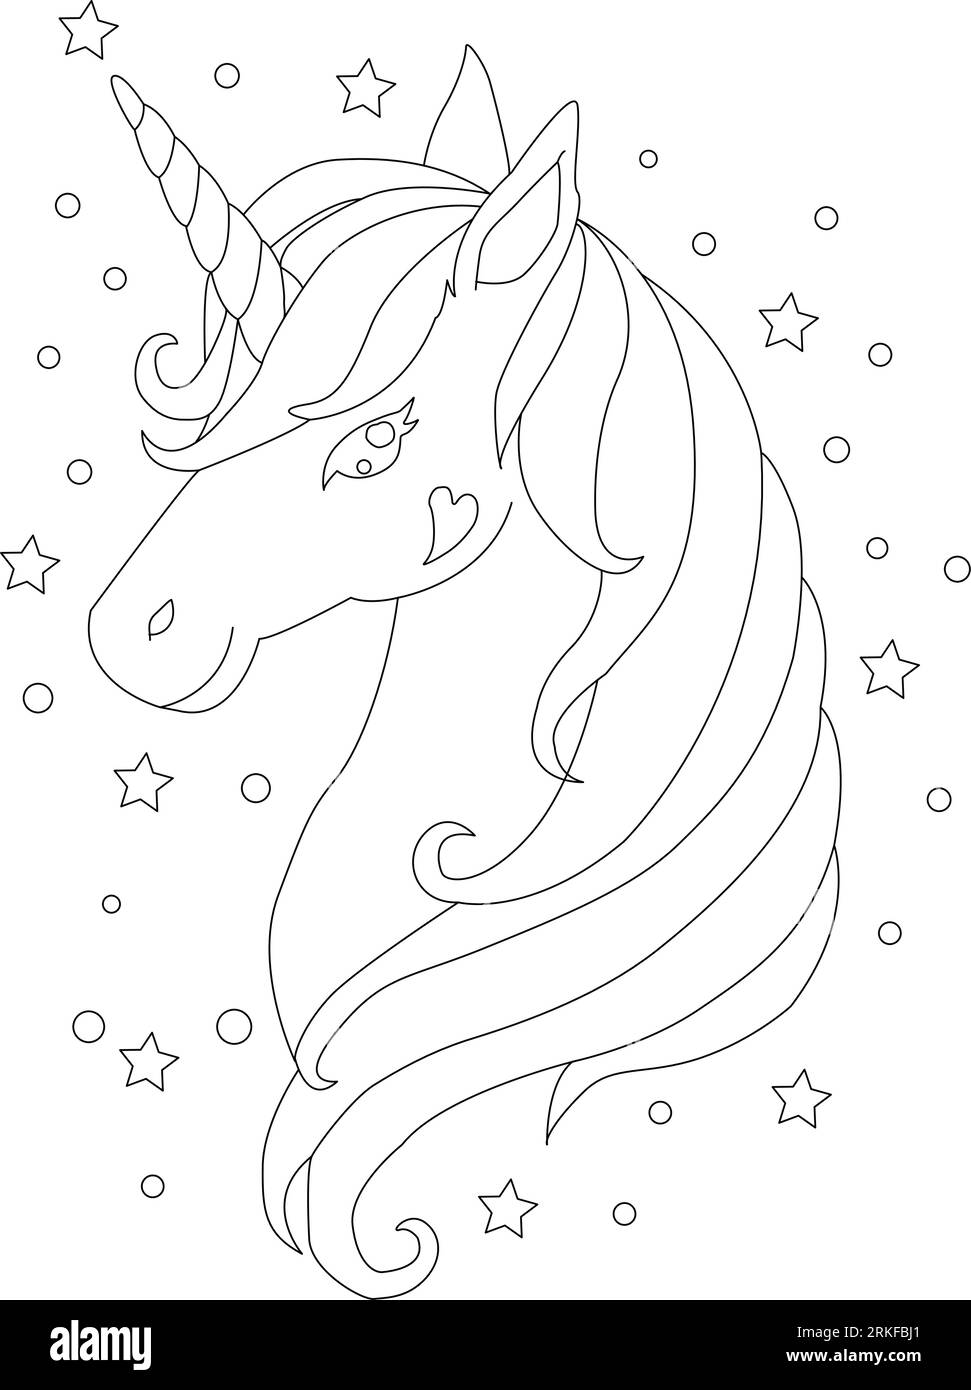 Tuffati nel mondo di Unicorn Coloring Book Magic, fantastico animale. Bianco e nero, lineare, immagine. Per la progettazione di libri da colorare, stampe, poster Illustrazione Vettoriale